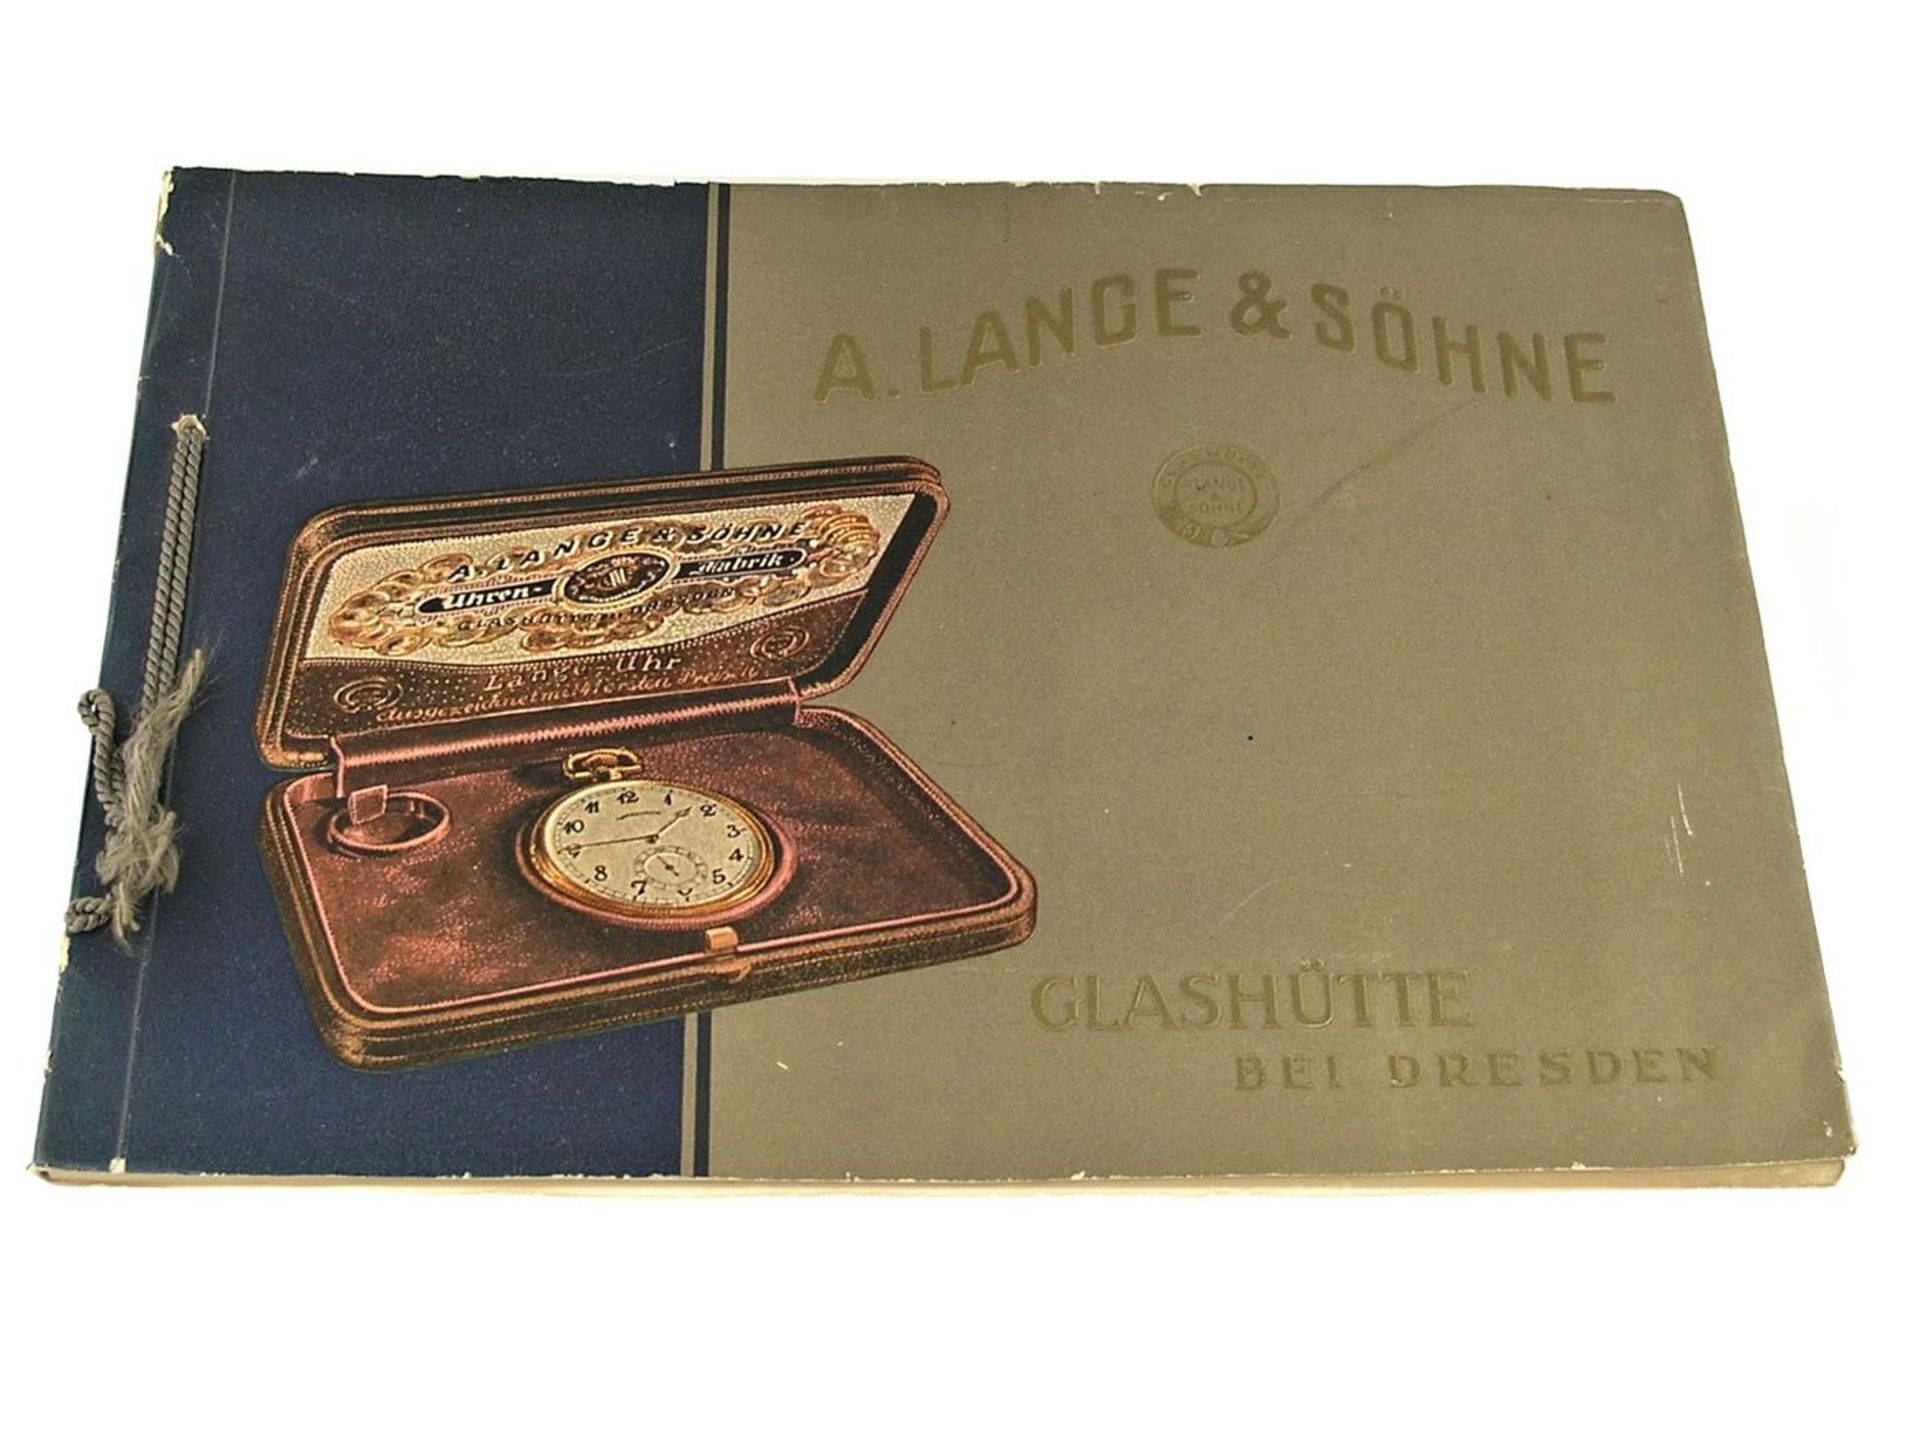 Taschenuhr: hochinteressanter Glashütter Originalkatalog von Lange & Söhne, um 1925 Umfangreicher